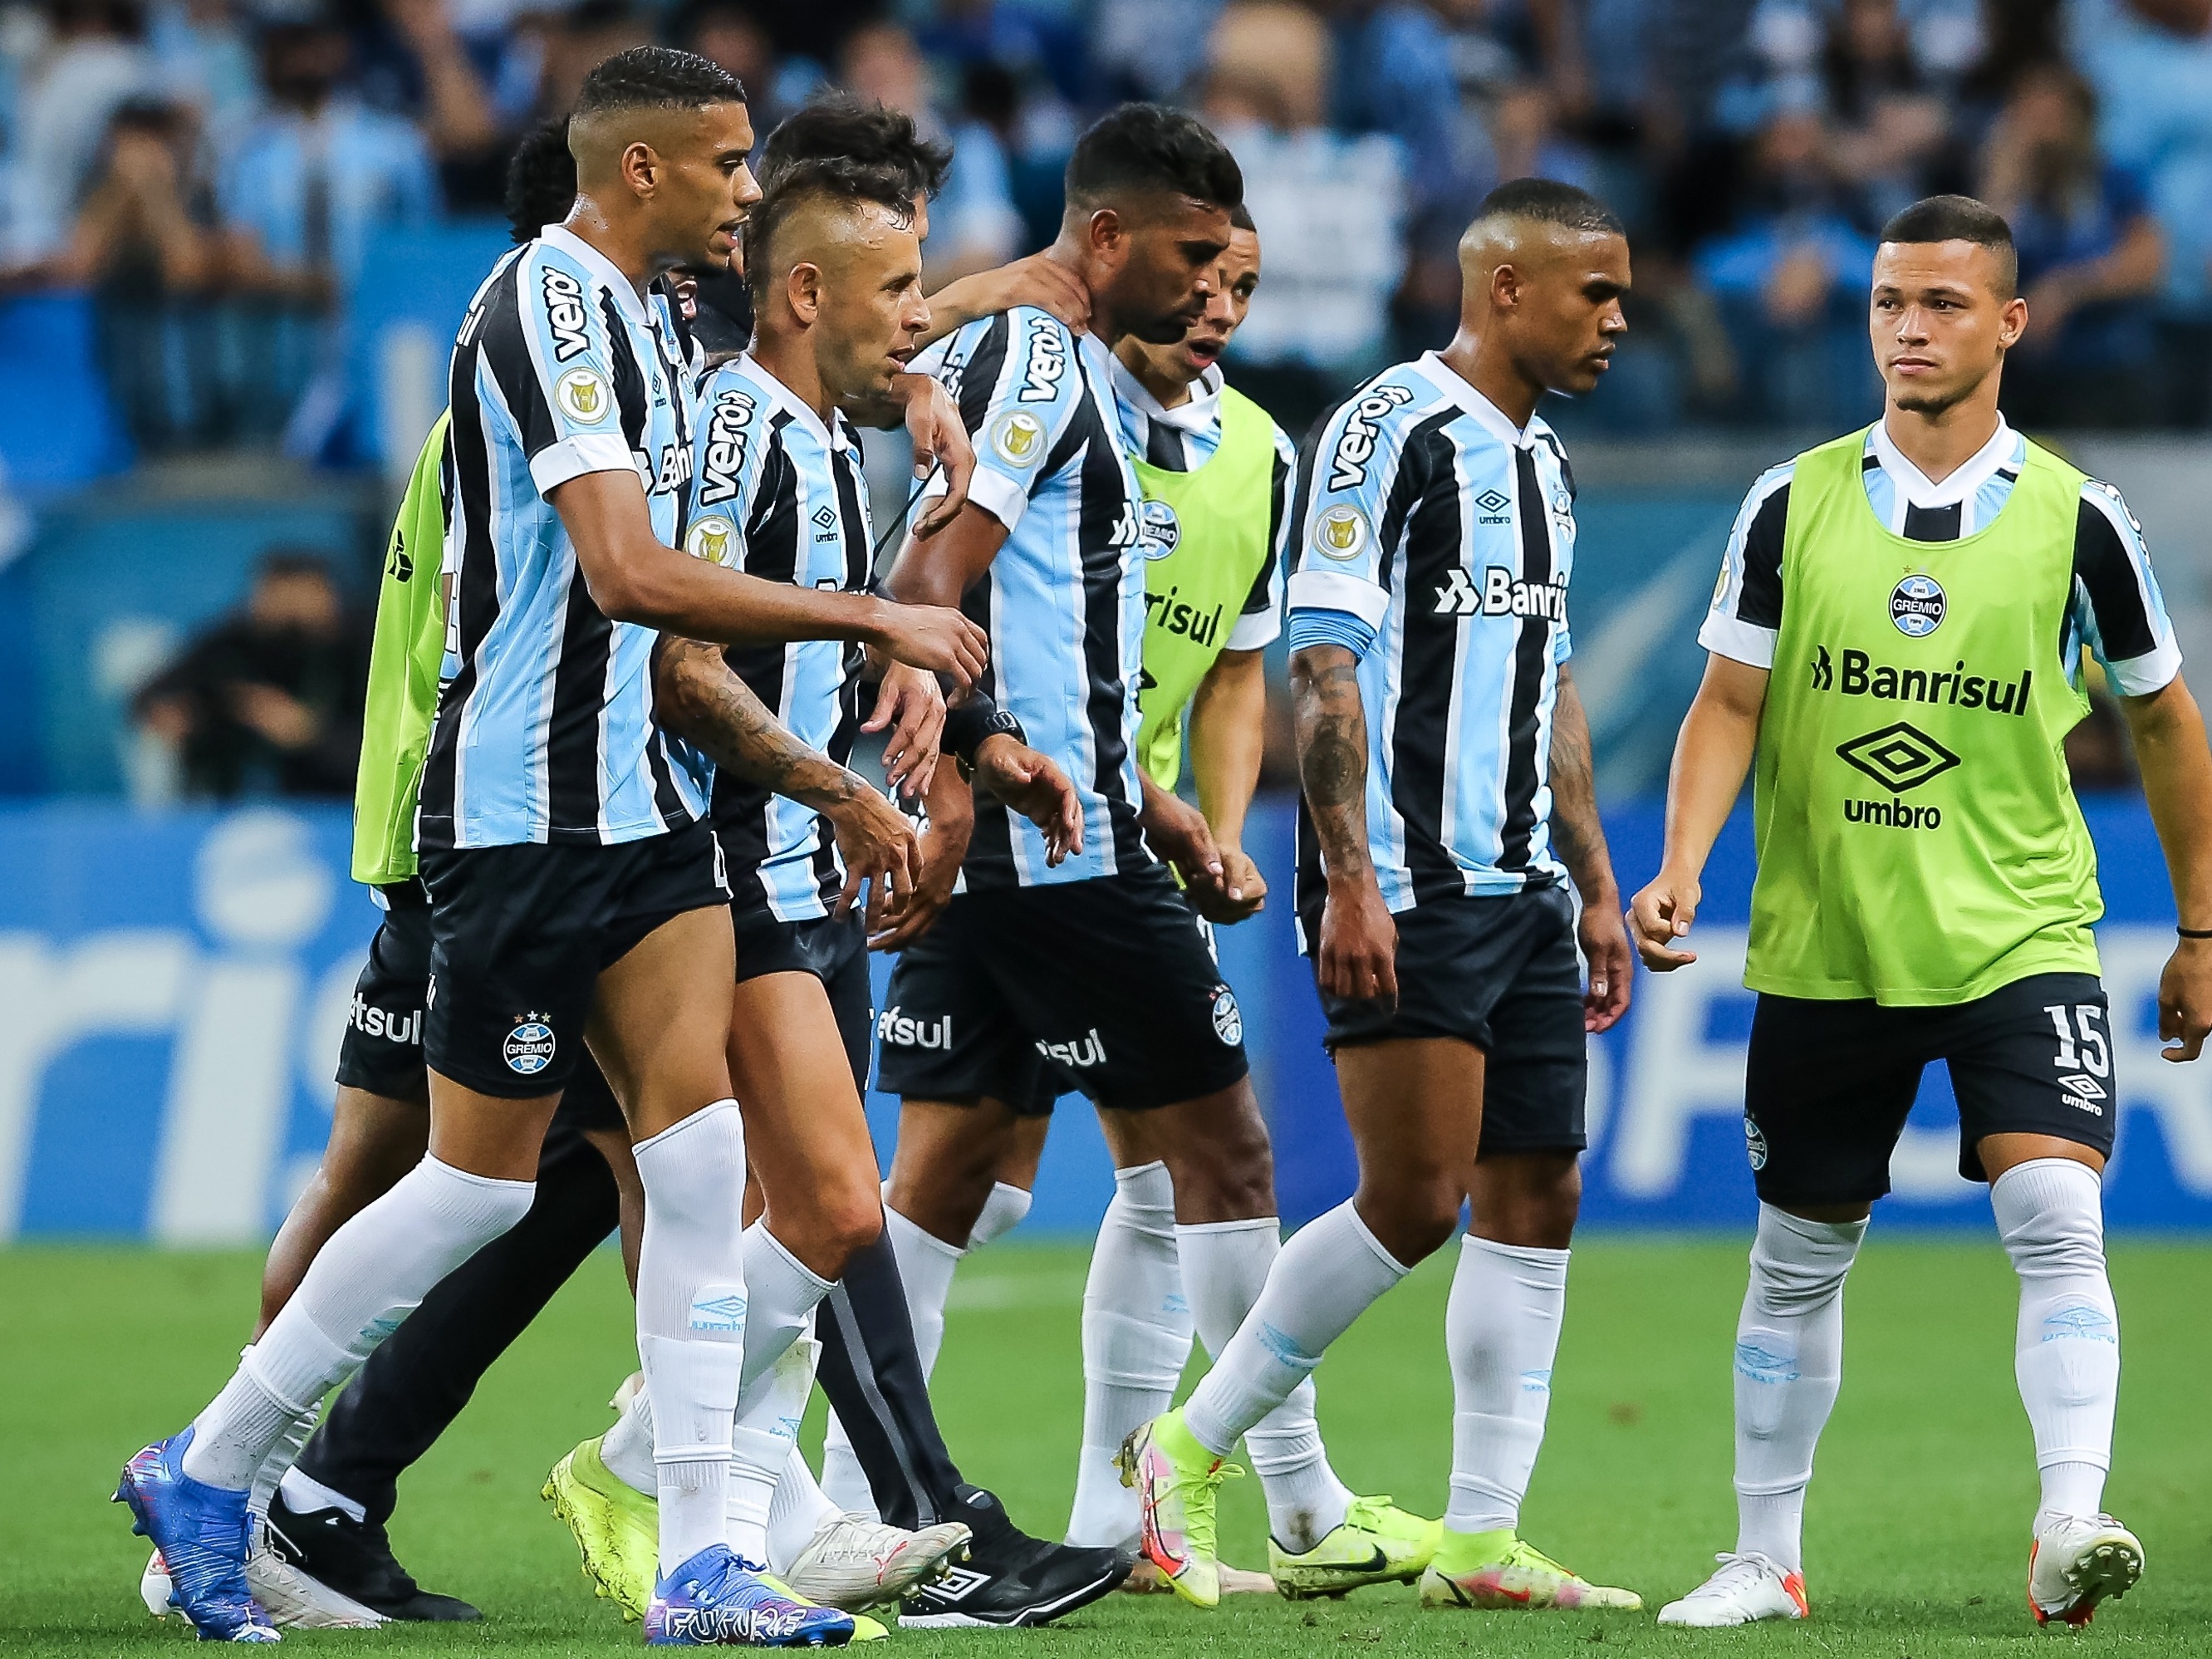 Grêmio vence o Atlético, mas está rebaixado para a segunda divisão em 2022  - GAZ - Notícias de Santa Cruz do Sul e Região